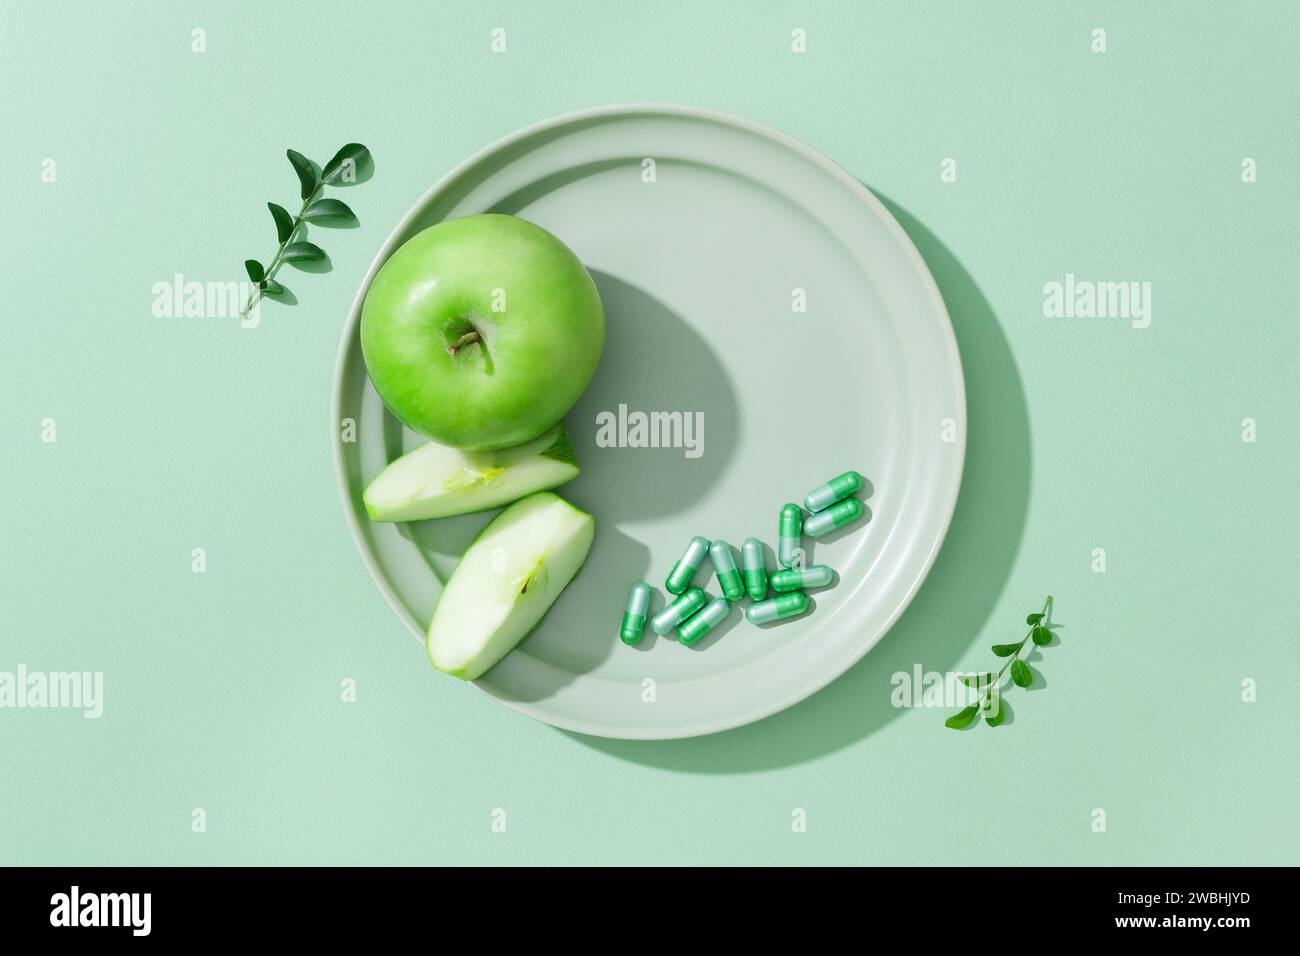 Le fette di mela verde e una manciata di capsule sono esposte su un piatto di ceramica. Spianatura piatta. Spazio libero sul piatto per prodotti cosmetici di bellezza naturale adv Foto Stock